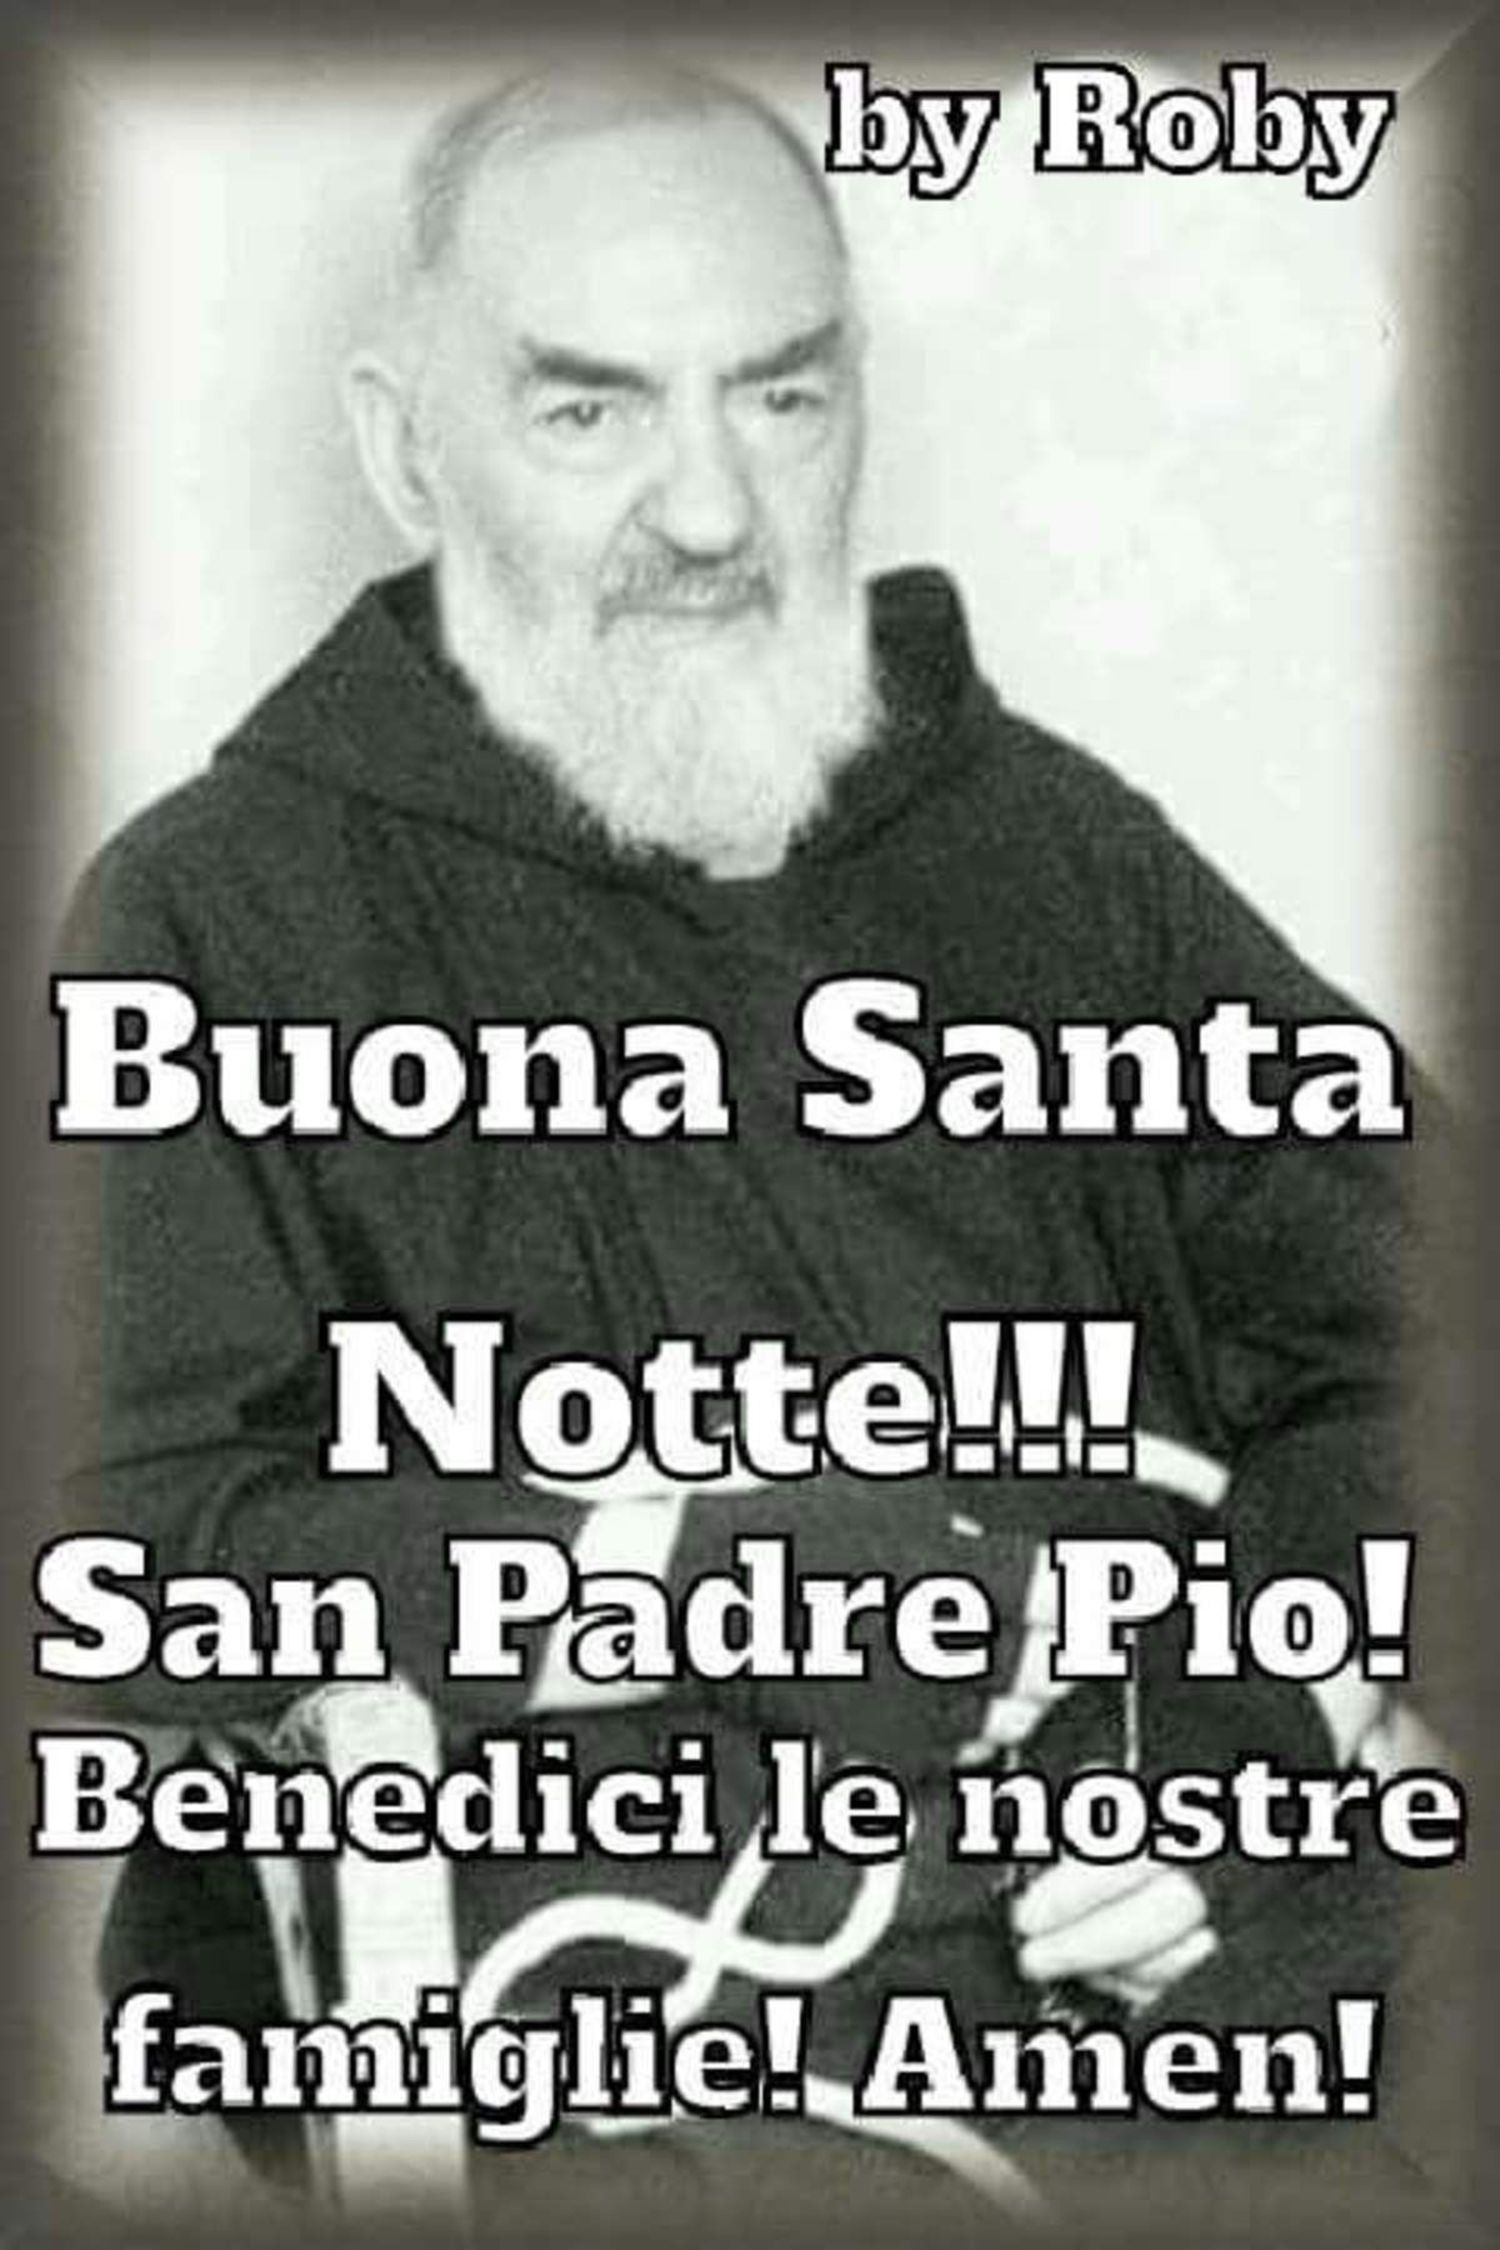 Buonanotte con Padre Pio immagini